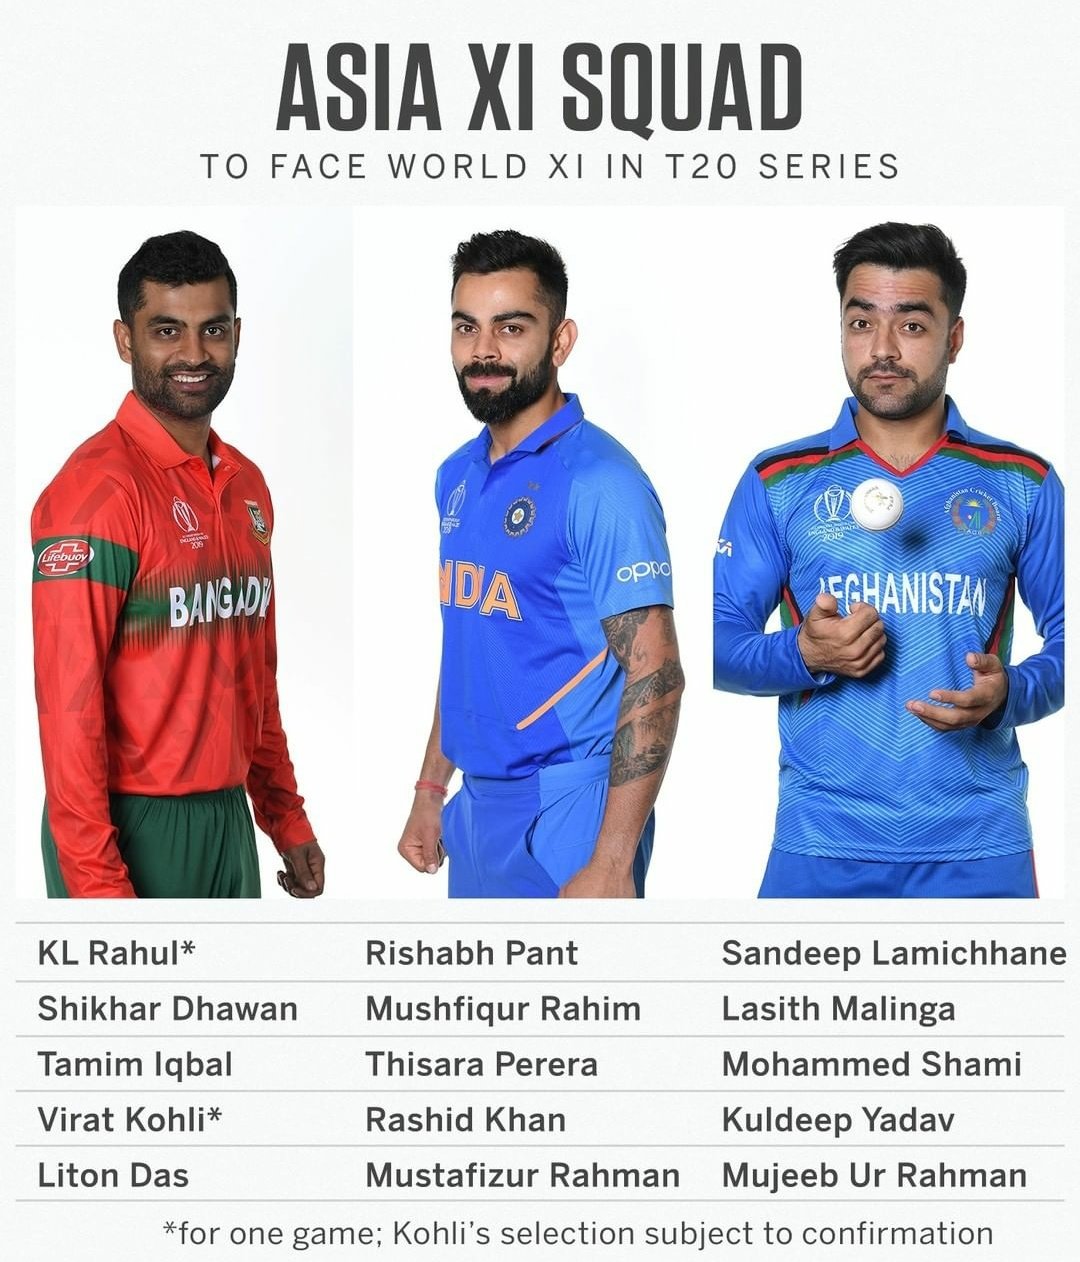 Asia XI squad